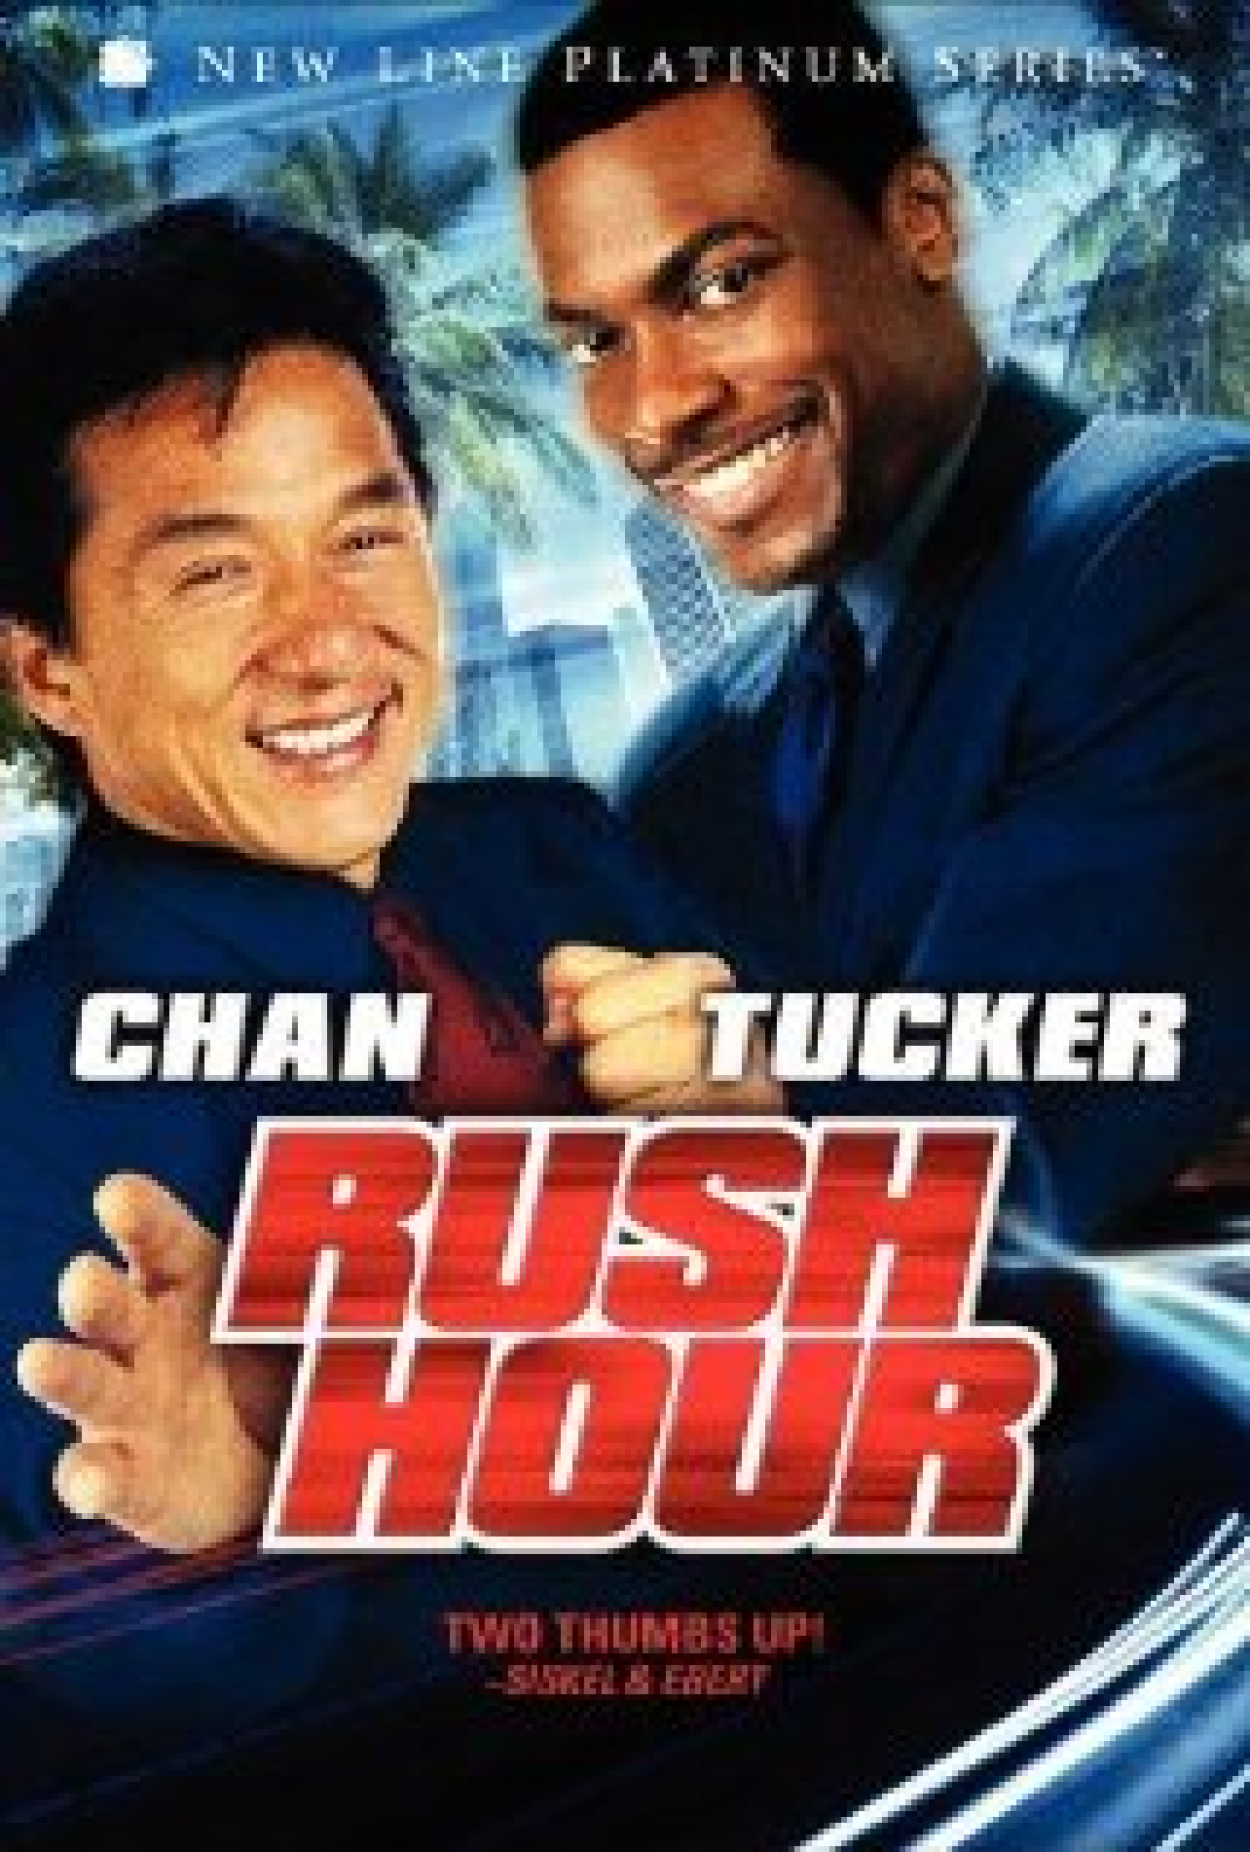 Jackie Chan afirma que quarto filme de 'A hora do rush' já tem roteiro